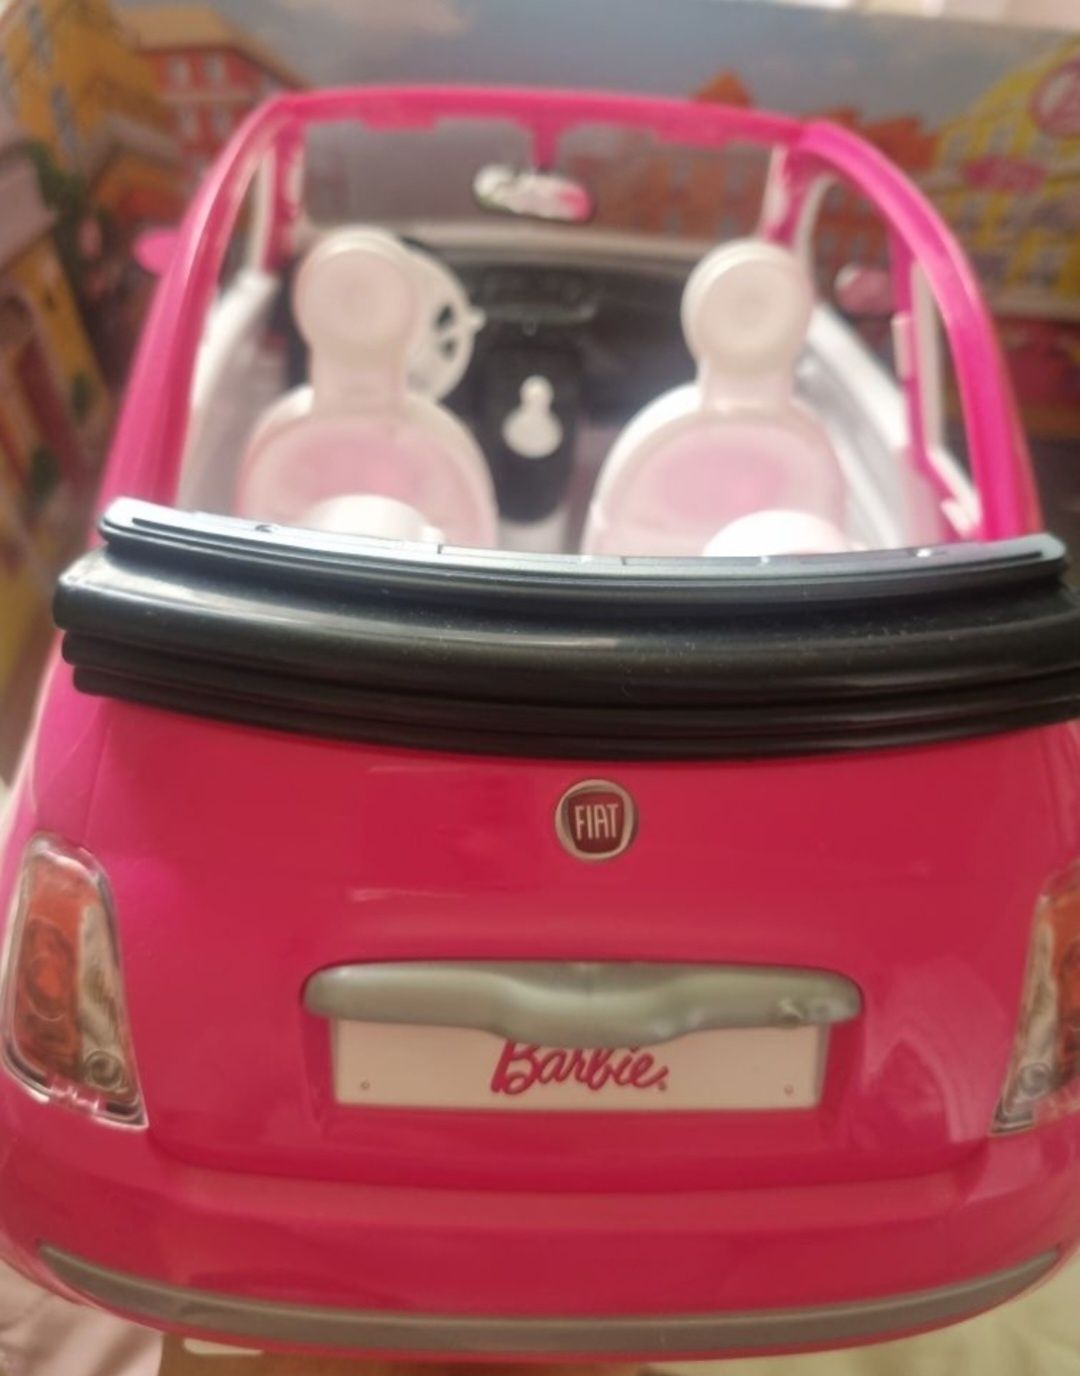 Barbie kabriolet - fiat.